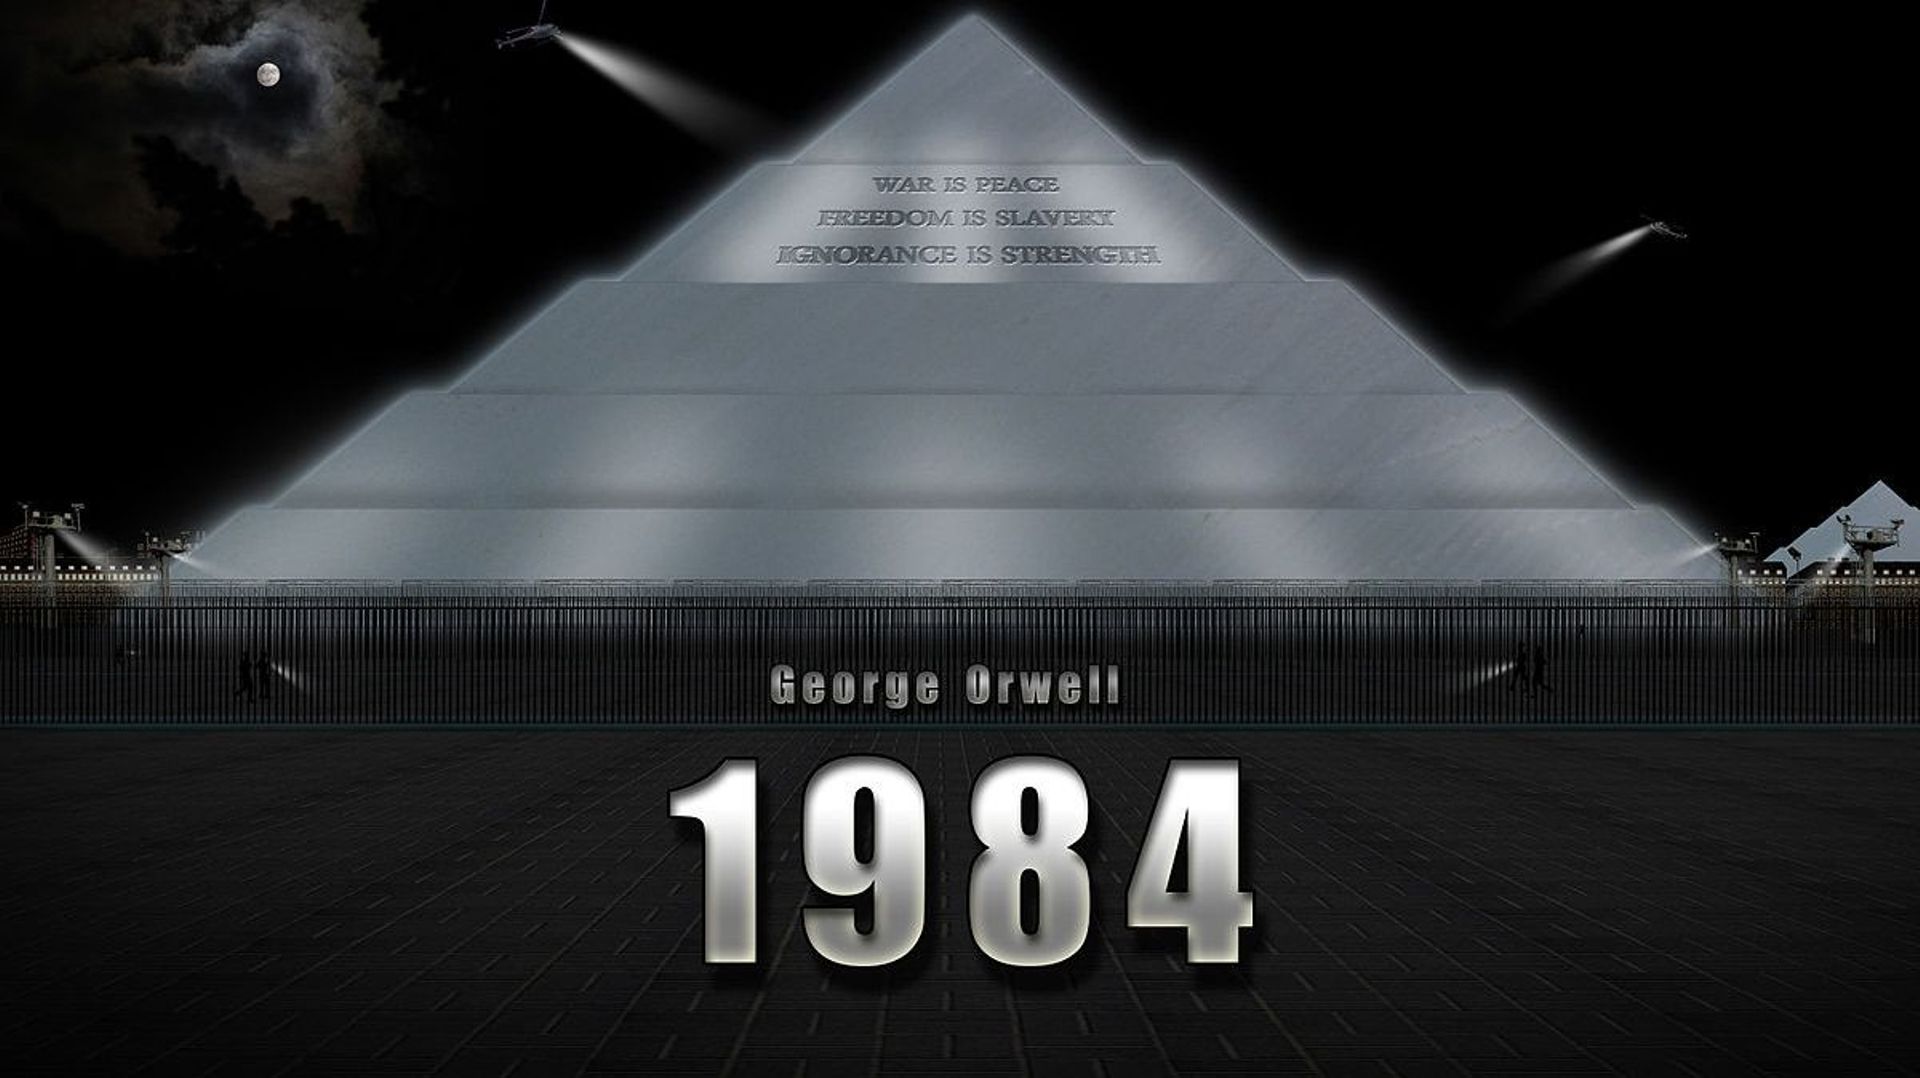 1984, de George Orwell - Représentation du ministère de la Vérité (Miniver en novlangue)